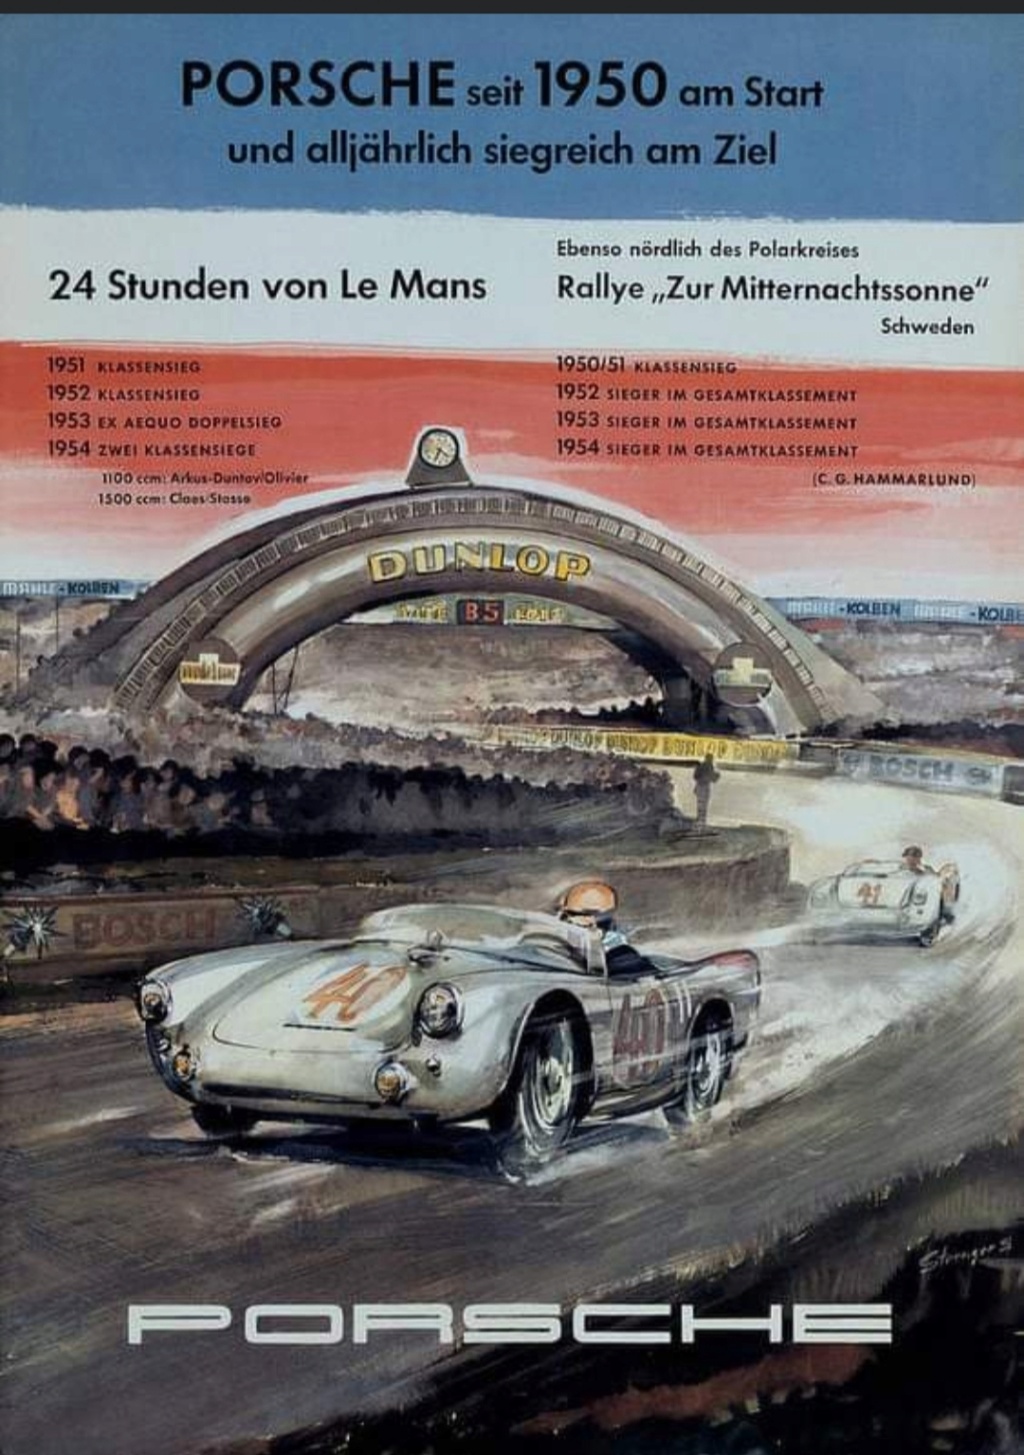 Affiches Porsche dans la course Automobile - Page 2 Img_2110